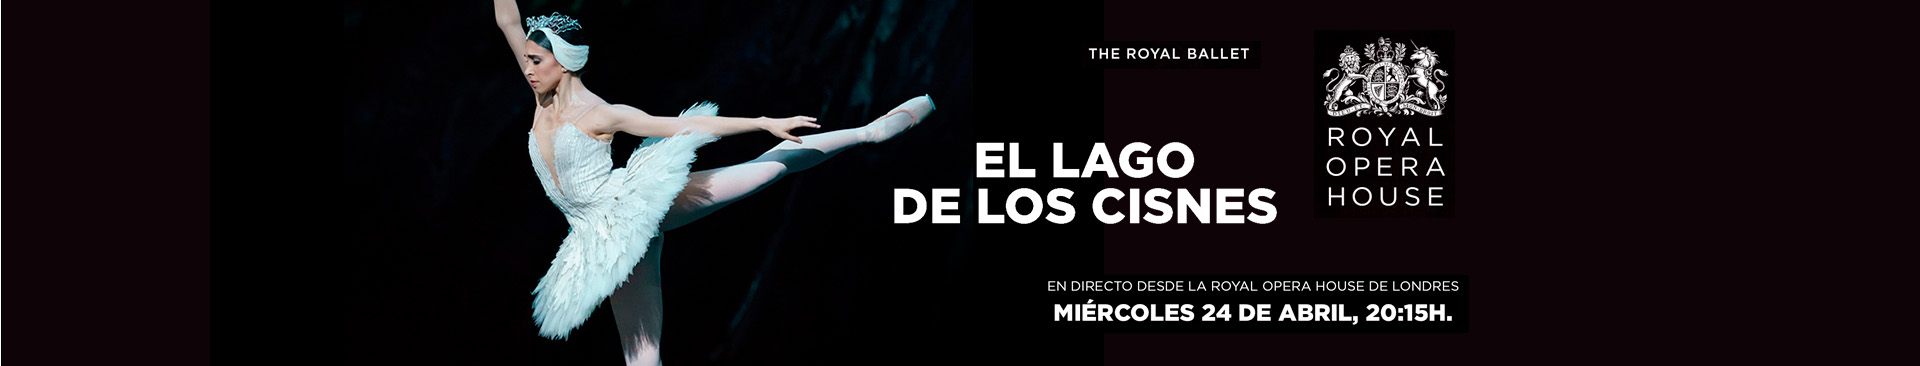 EL LAGO DE LOS CISNES BALLET LIVE ROH 23 24